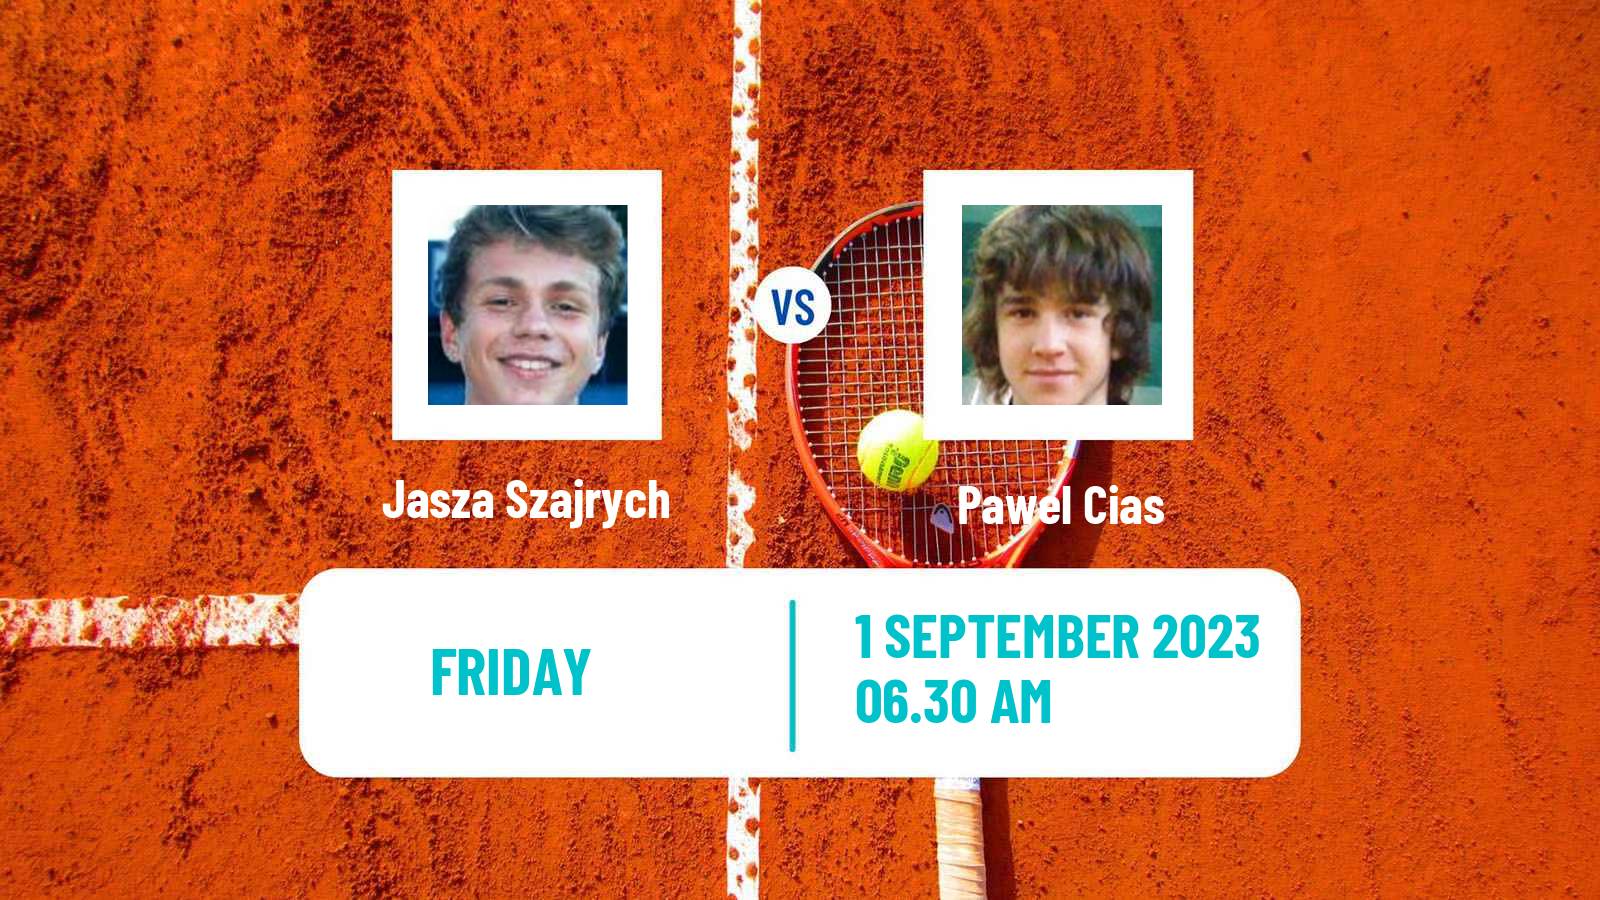 Tennis ITF M15 Szczawno Men Jasza Szajrych - Pawel Cias